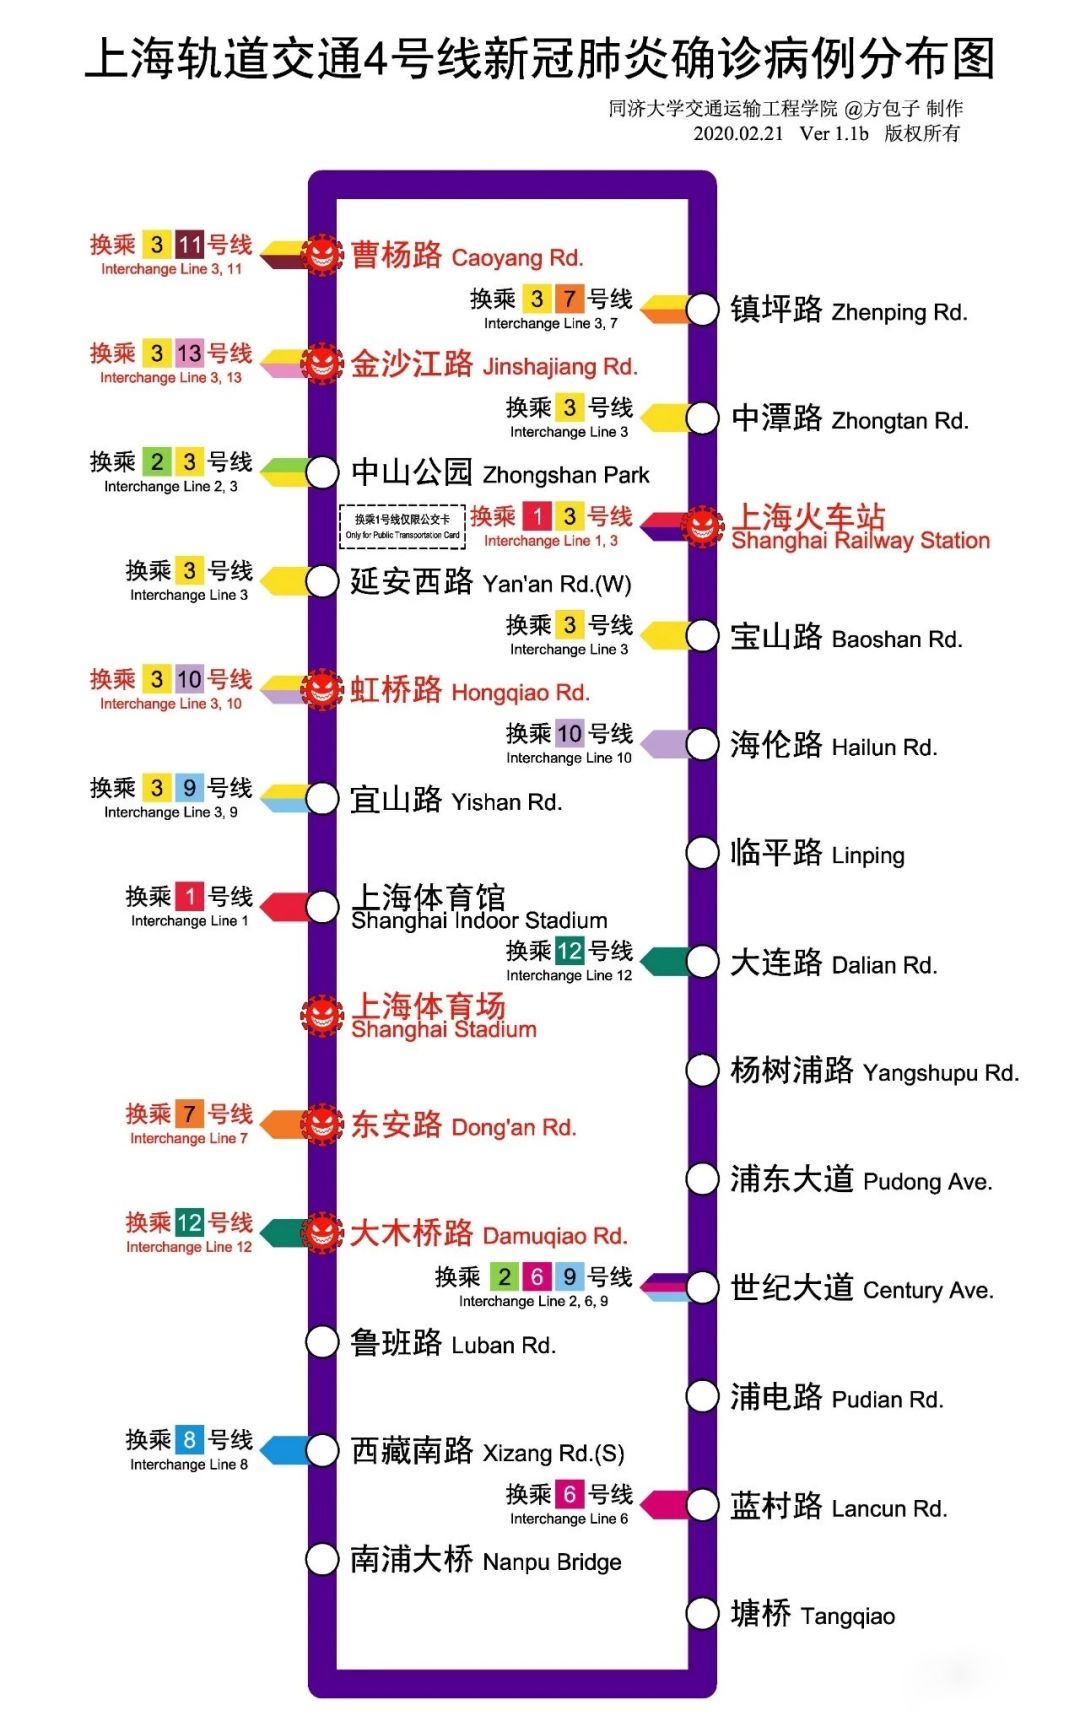 分别是:曹杨路,金沙江路,上海火车站,虹桥路,上海体育场,东安路,大